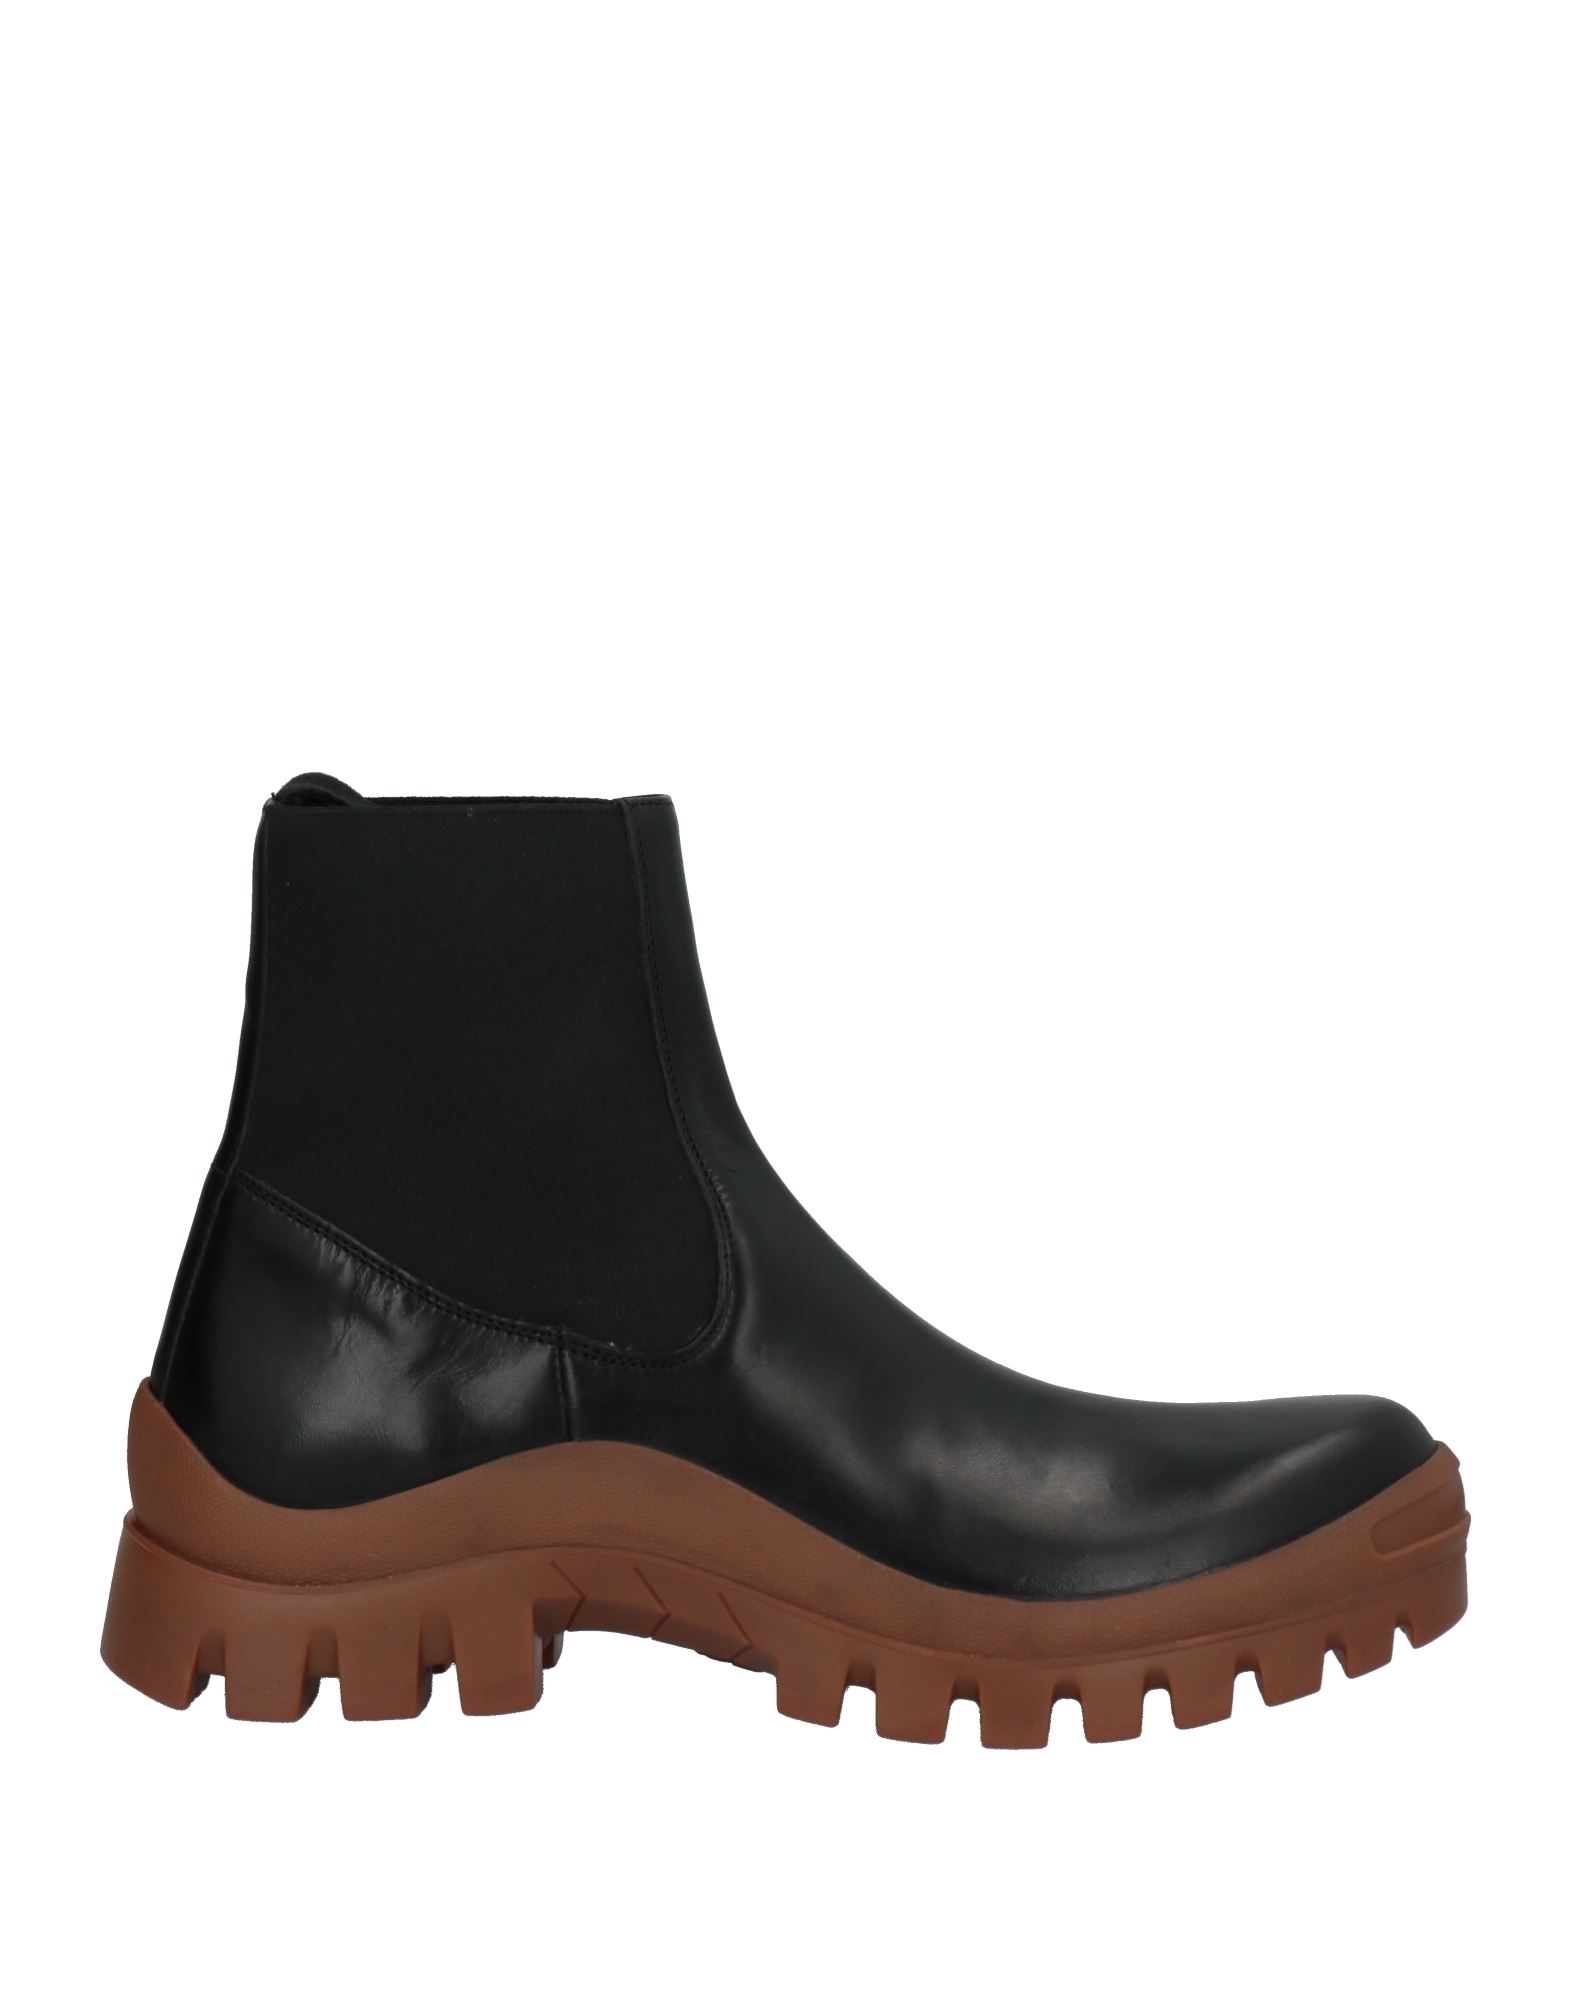 Shop Atp Atelier Woman Ankle Boots Black Size 6 Cowhide